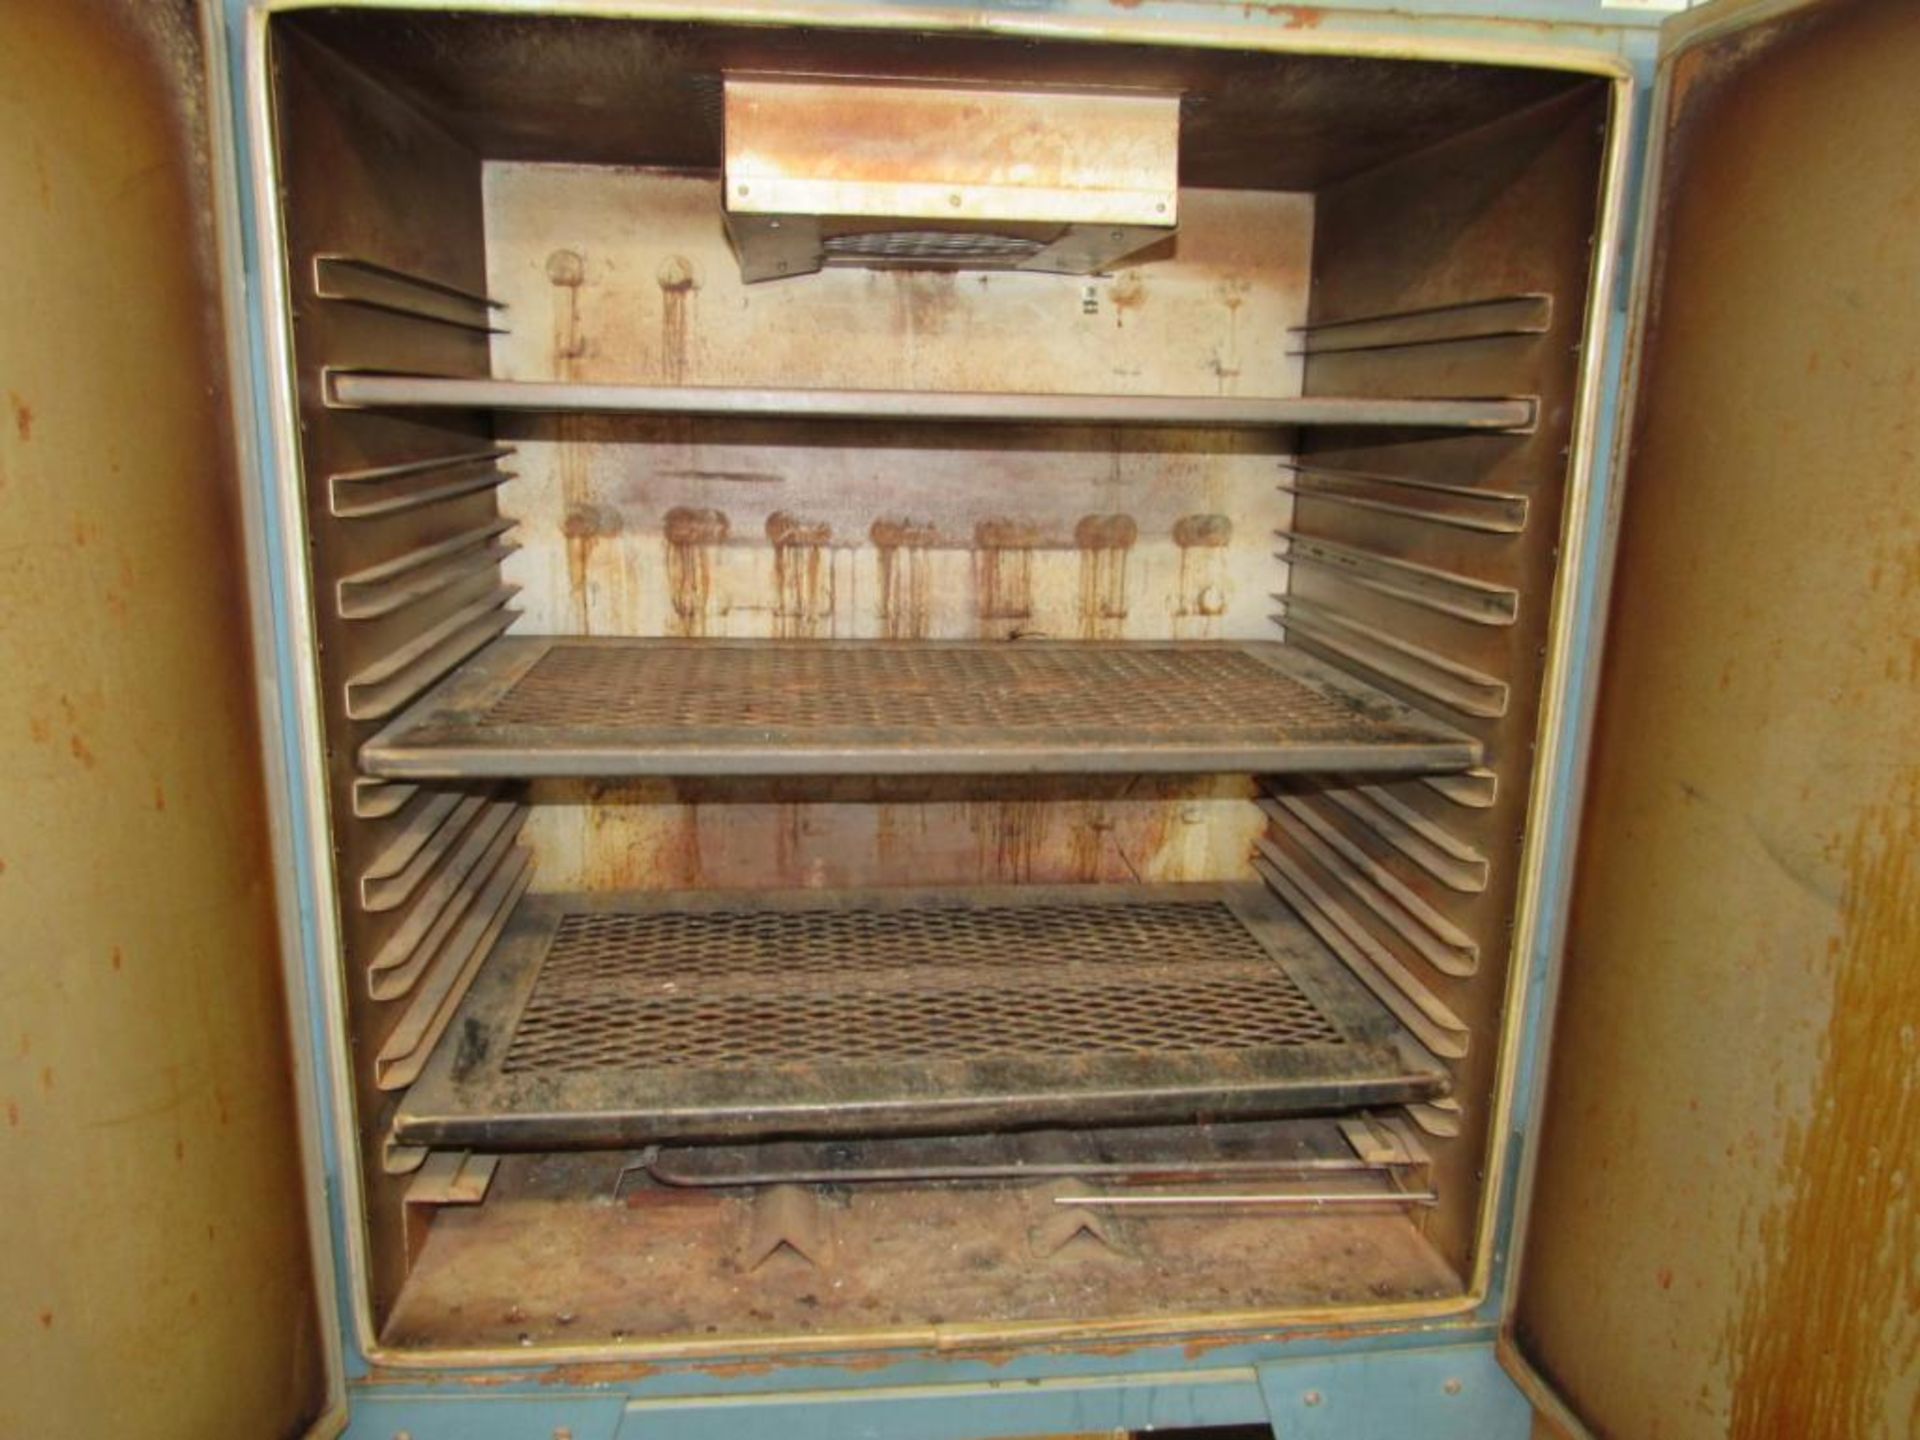 Grieve Double-Door Oven Model 323, S/N 56217 (Area H) - Image 2 of 3